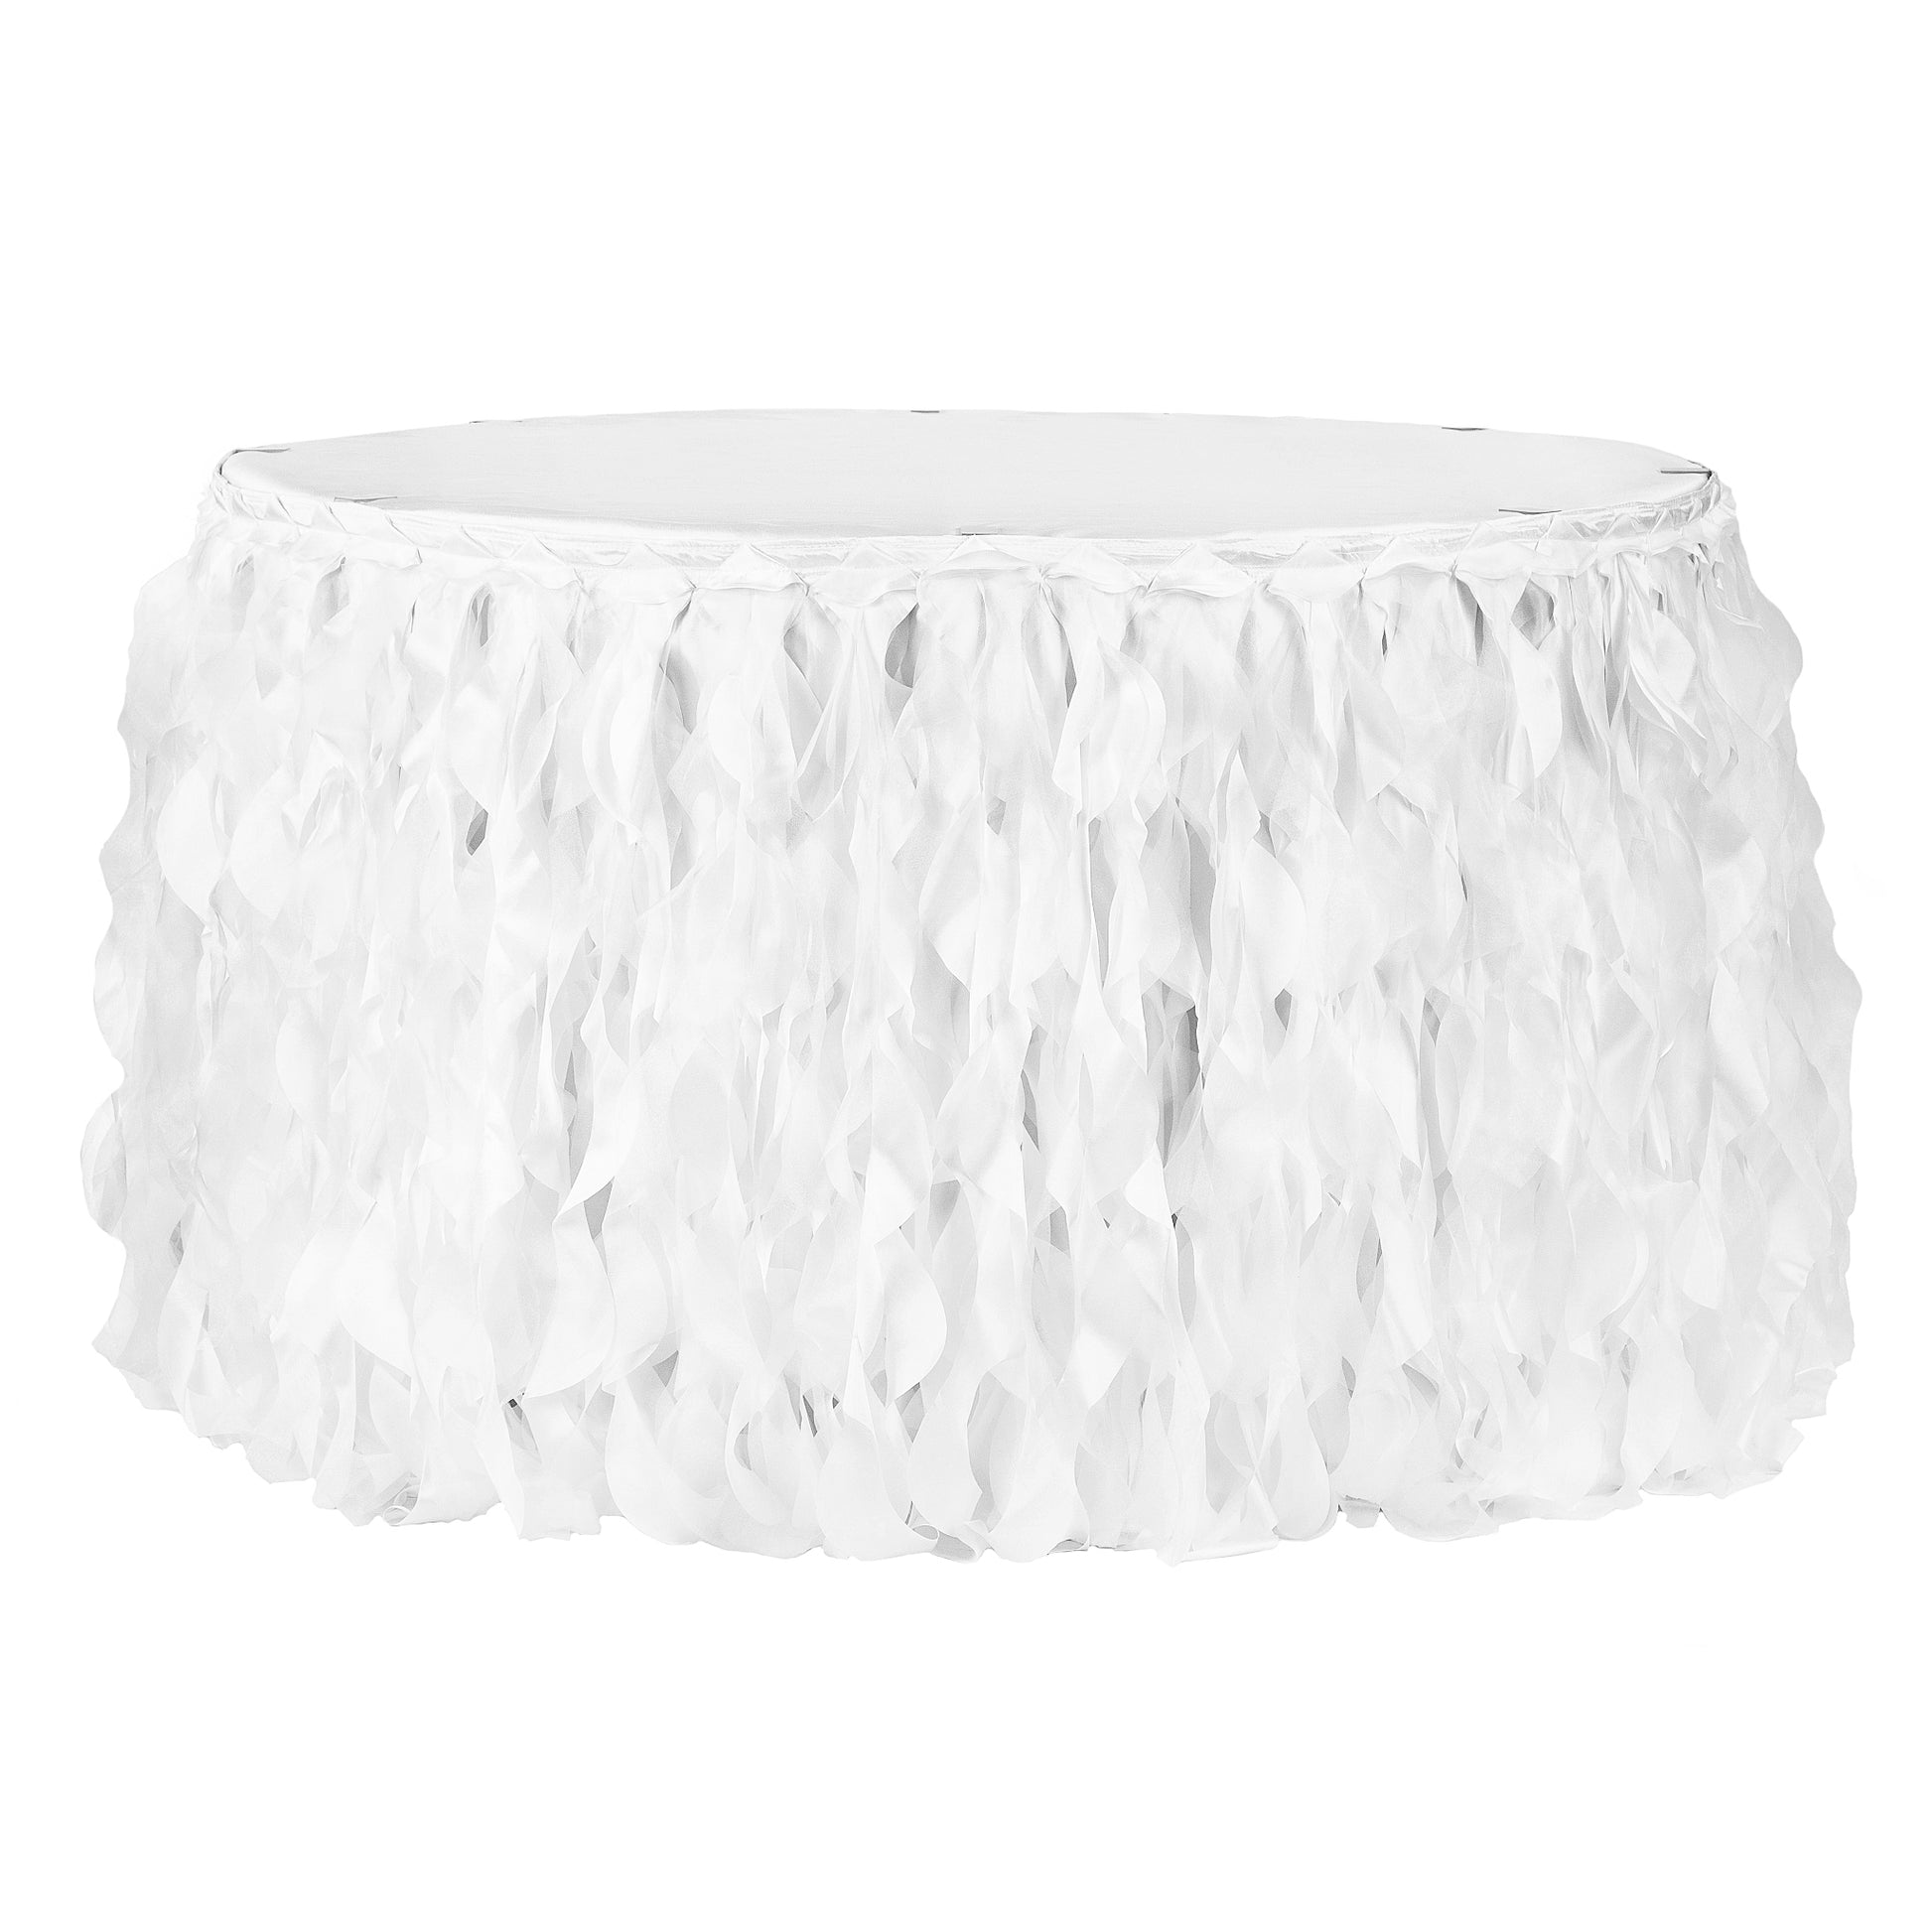 Curly Willow 21ft Table Skirt - White - CV Linens